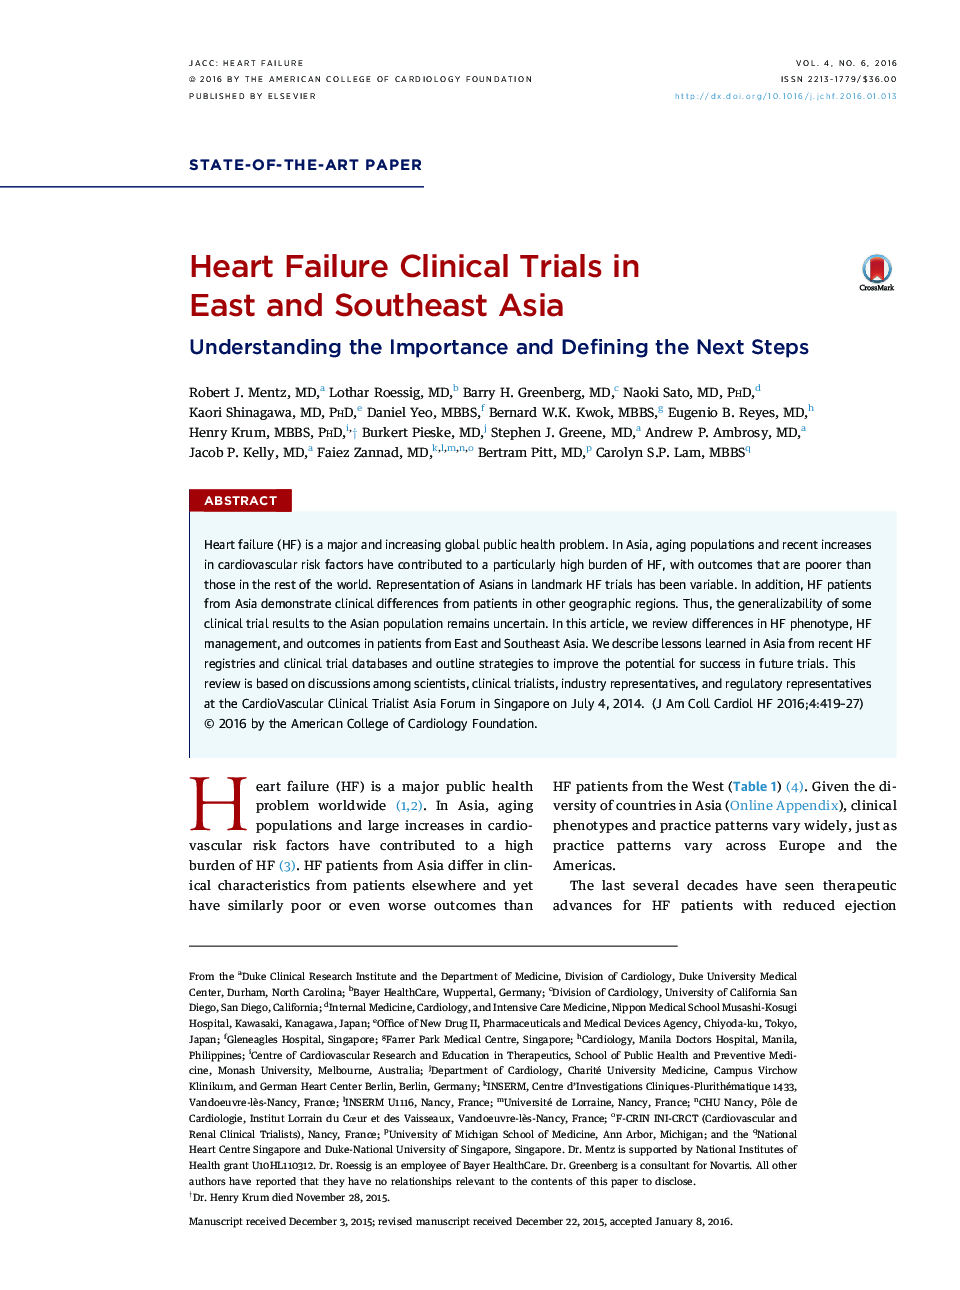 اختلالات قلبی در محاکمات بالینی در شرق و جنوب شرق آسیا: شناخت اهمیت و تعیین مراحل بعدی 